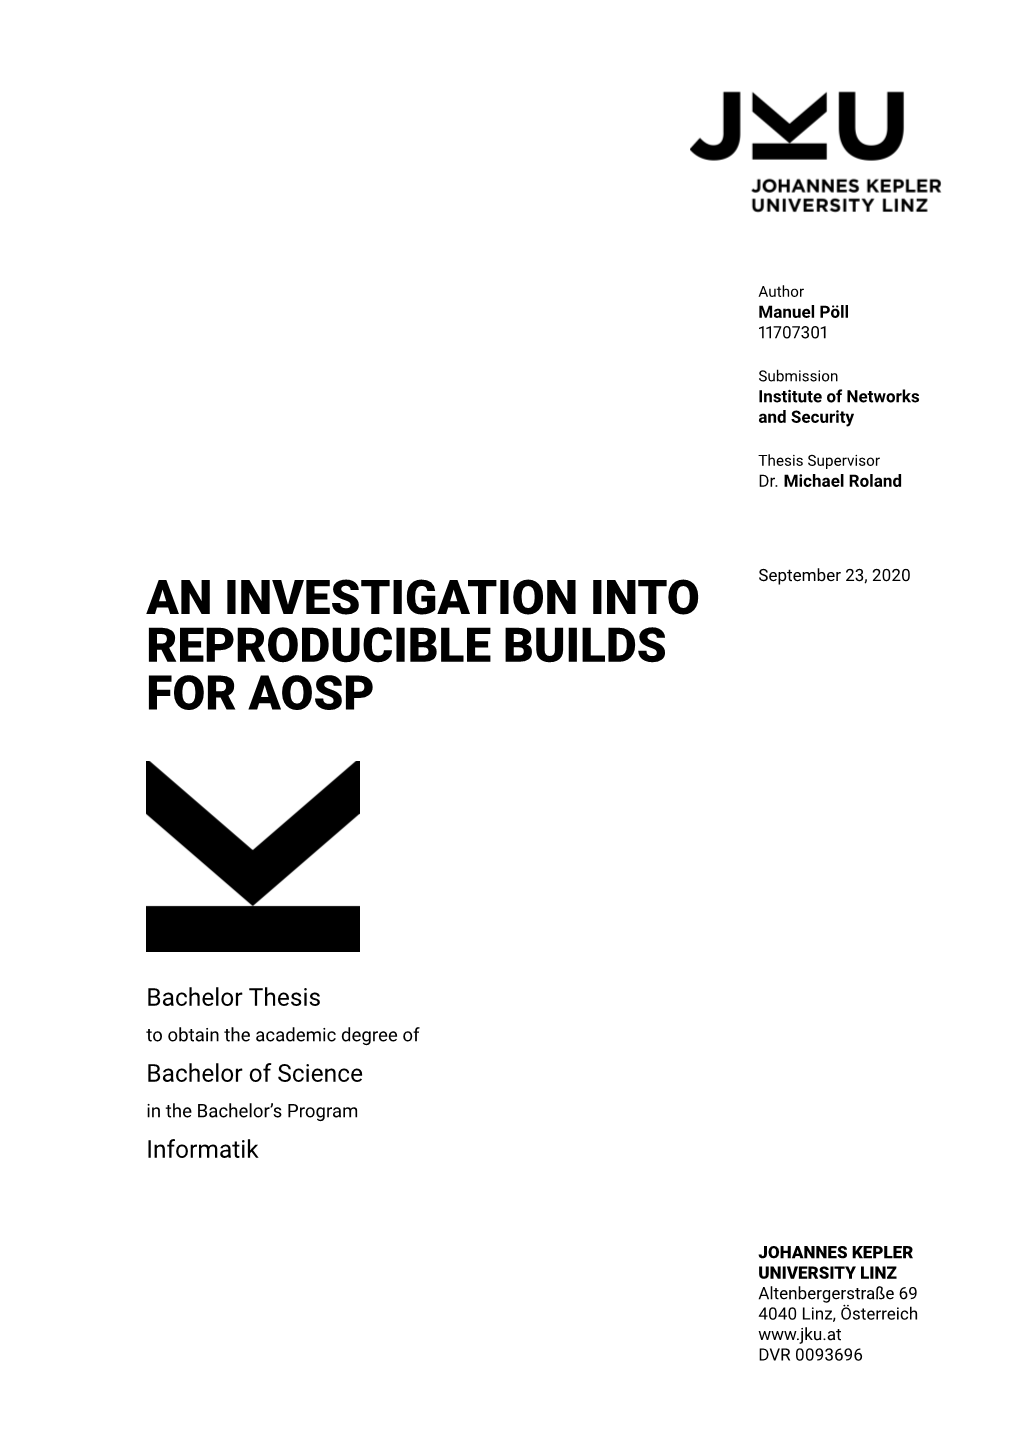 An Investigation Into Reproducible Builds for Aosp